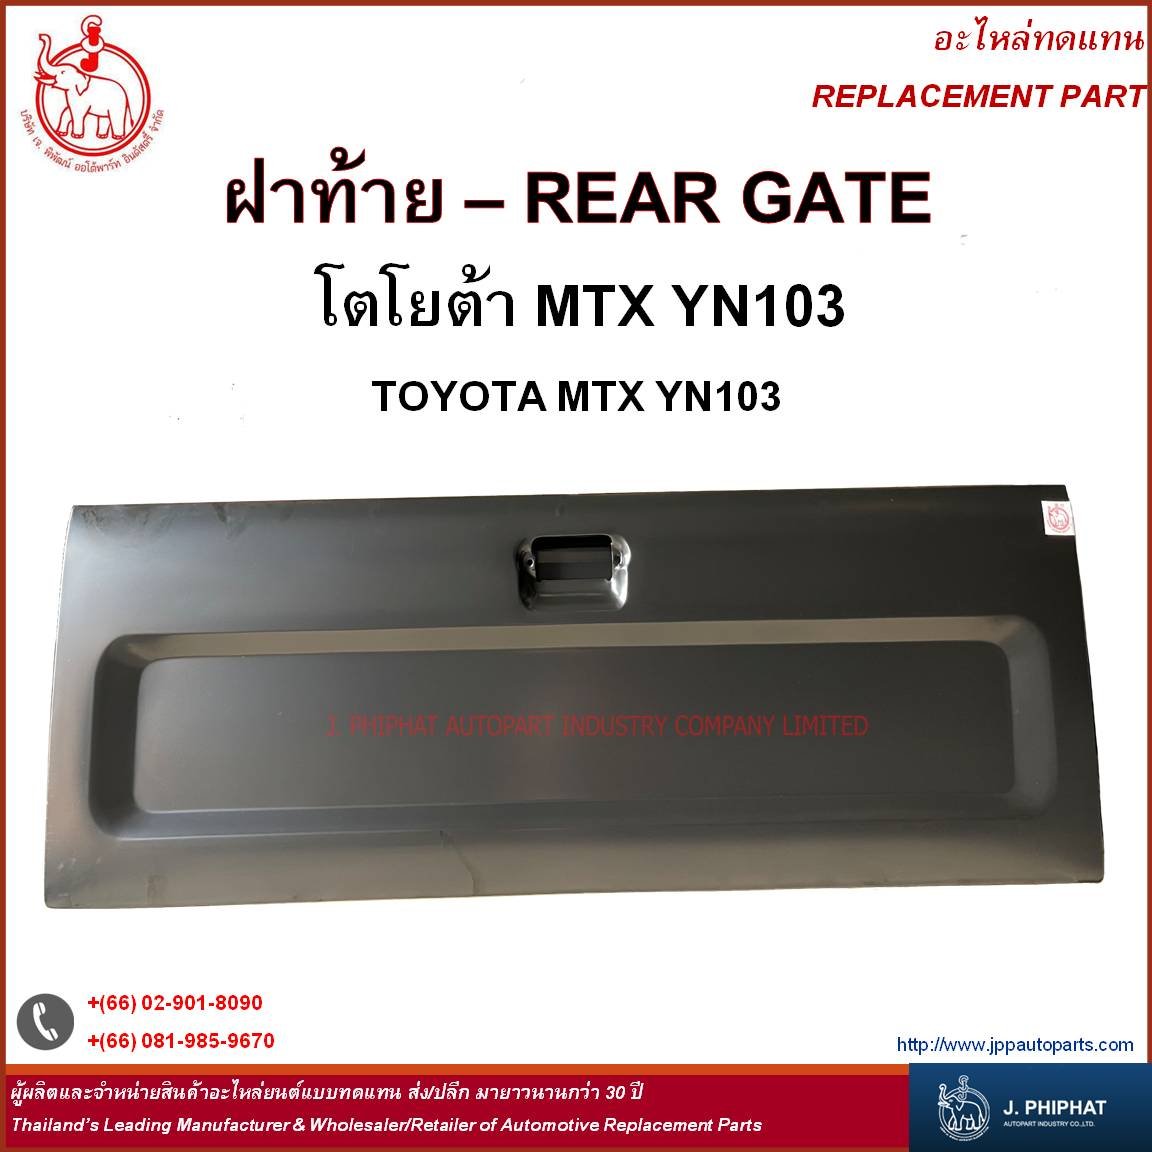 Rear Gate - Toyota MTX YN100 '93-94  Middle opener